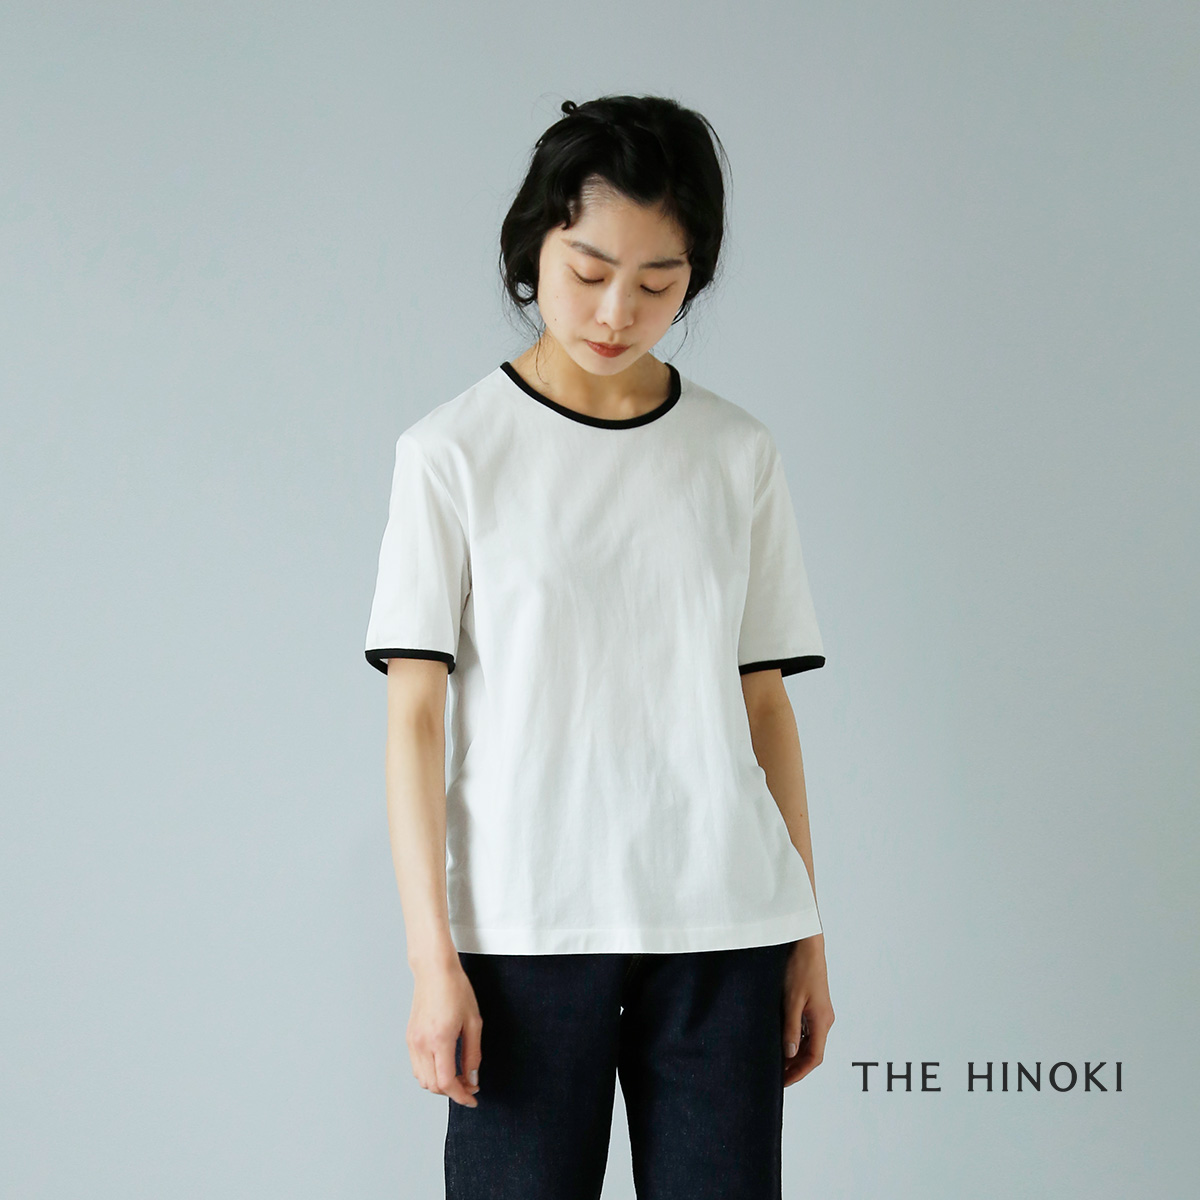 THE HINOKI(ザ ヒノキ)オーガニックコットンベーシックリンガーTシャツ th22s-42